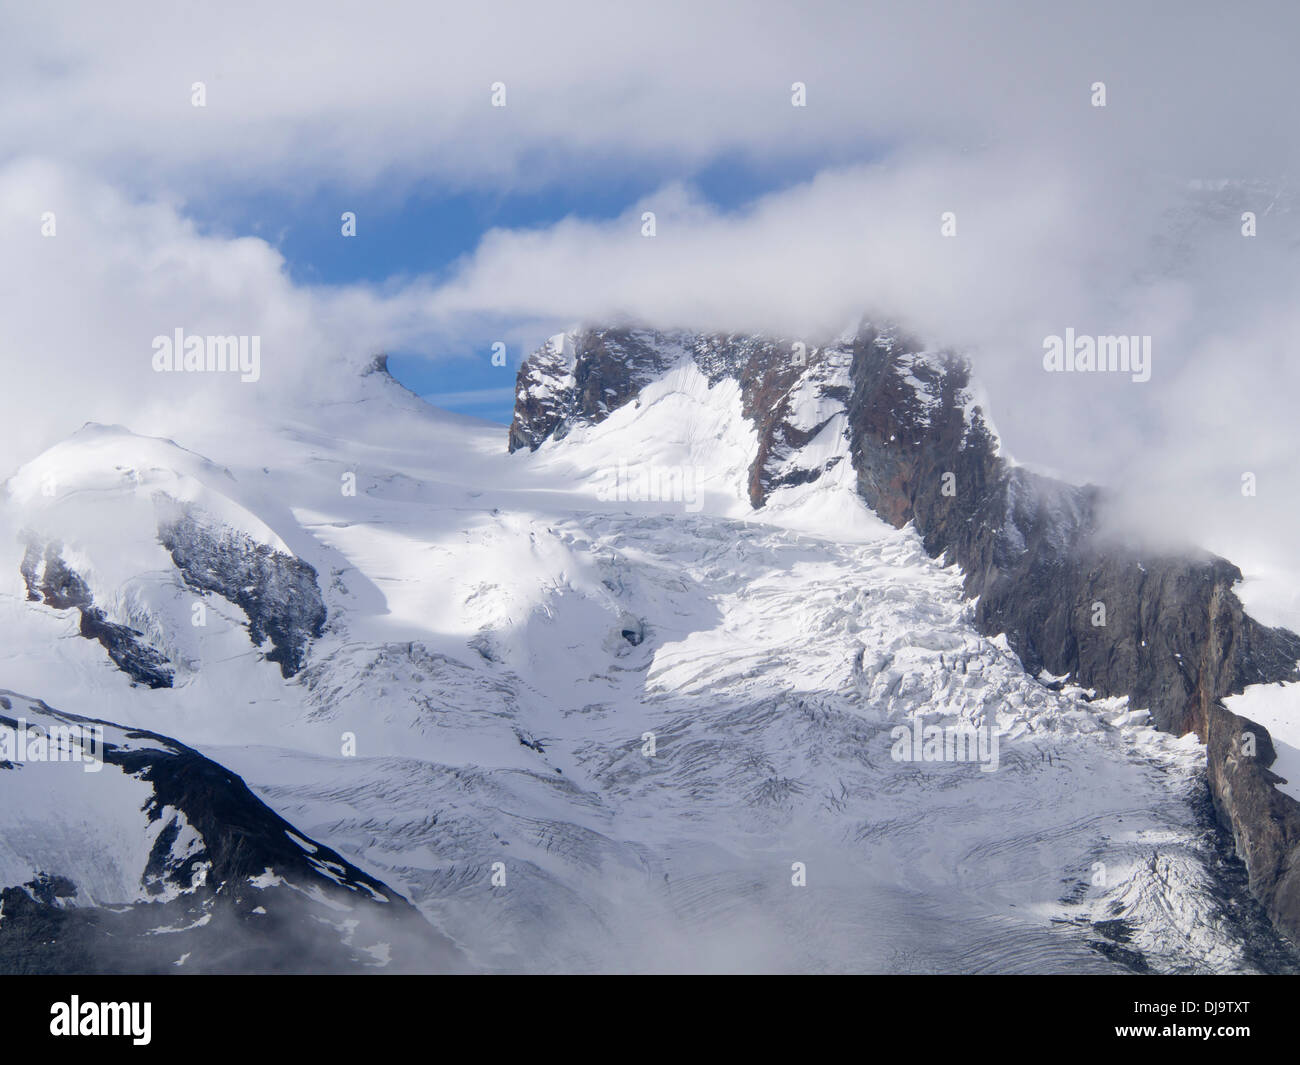 Glacier du Gorner, glaciation alpine, Gornergletscher, près de Zermatt en Suisse, crevasses sur une section raide Banque D'Images